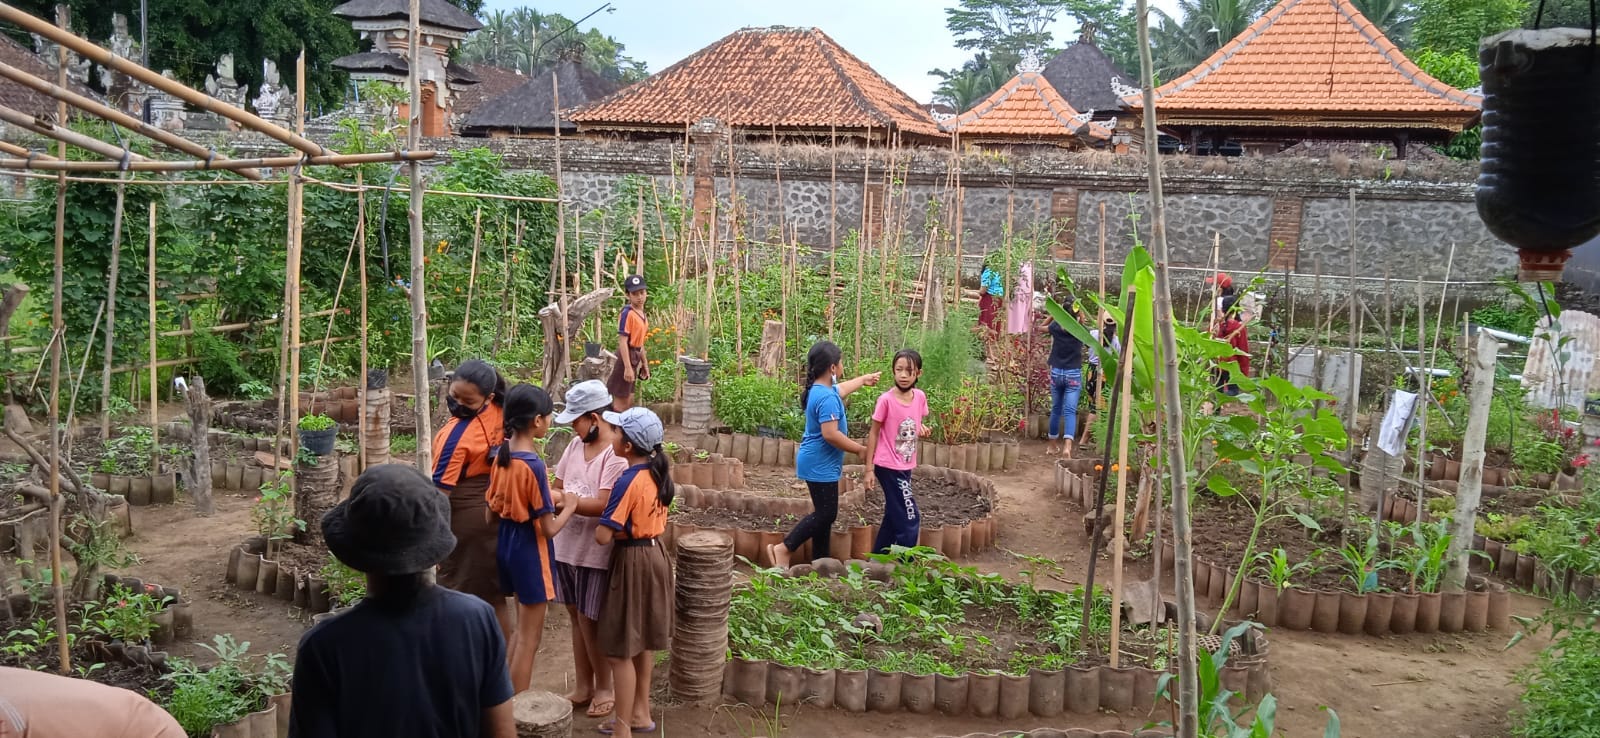 Onder het motto "Wat je vandaag leert kun je morgen in de praktijk brengen" vergroot Bumi Manusia de kennis en vaardigheden van Balinese kinderen op het gebied van het kweken van biologische groenten en fruit, het aanleggen van biologische rijstvelden, het kweken van vis en het fokken van kippen, eenden en geiten.